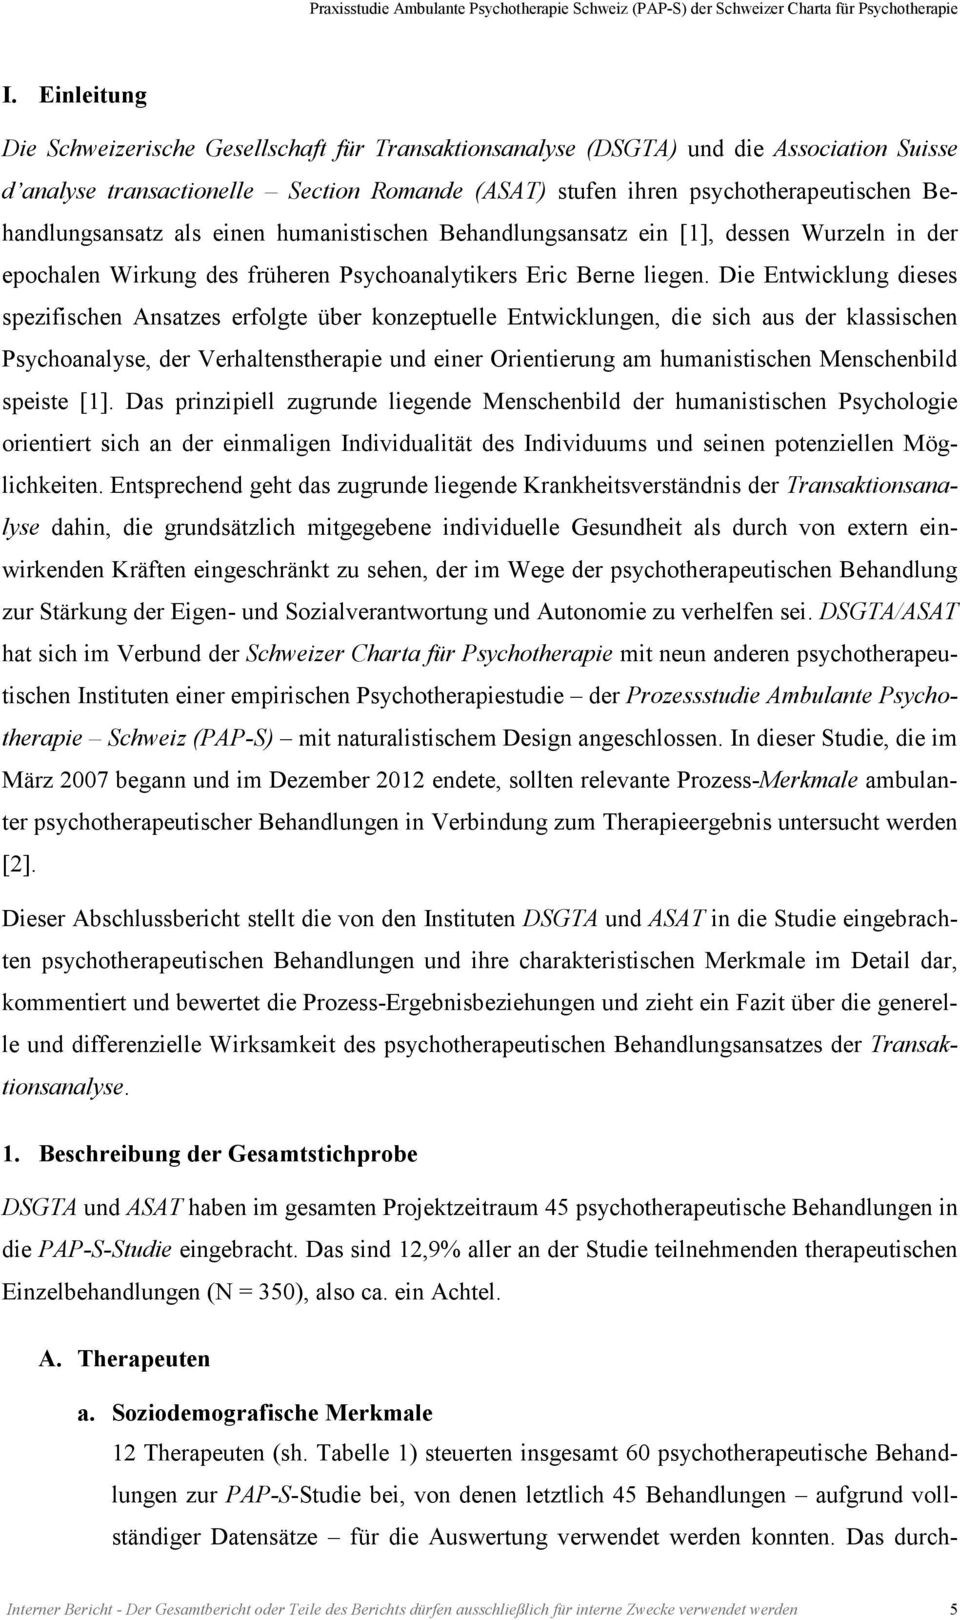 Abschlussbericht Praxisstudie Ambulante Psychotherapie Schweiz Pap S Der Institute Der Schweizer Charta Fur Psychotherapie Pdf Kostenfreier Download